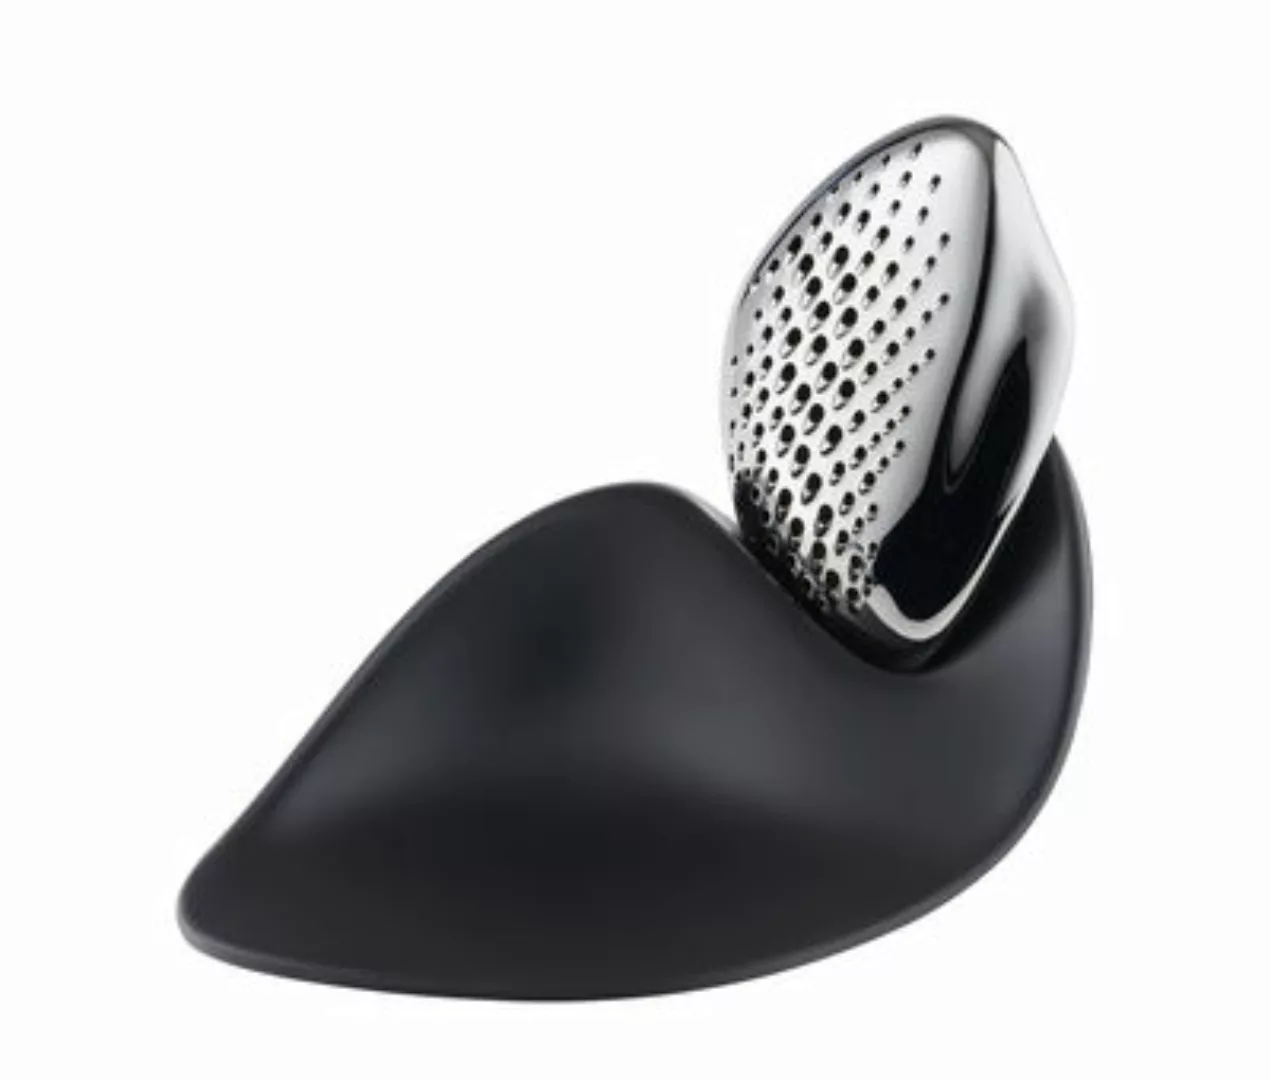 Käsereibe Forma plastikmaterial schwarz metall / von Zaha Hadid - Alessi - günstig online kaufen